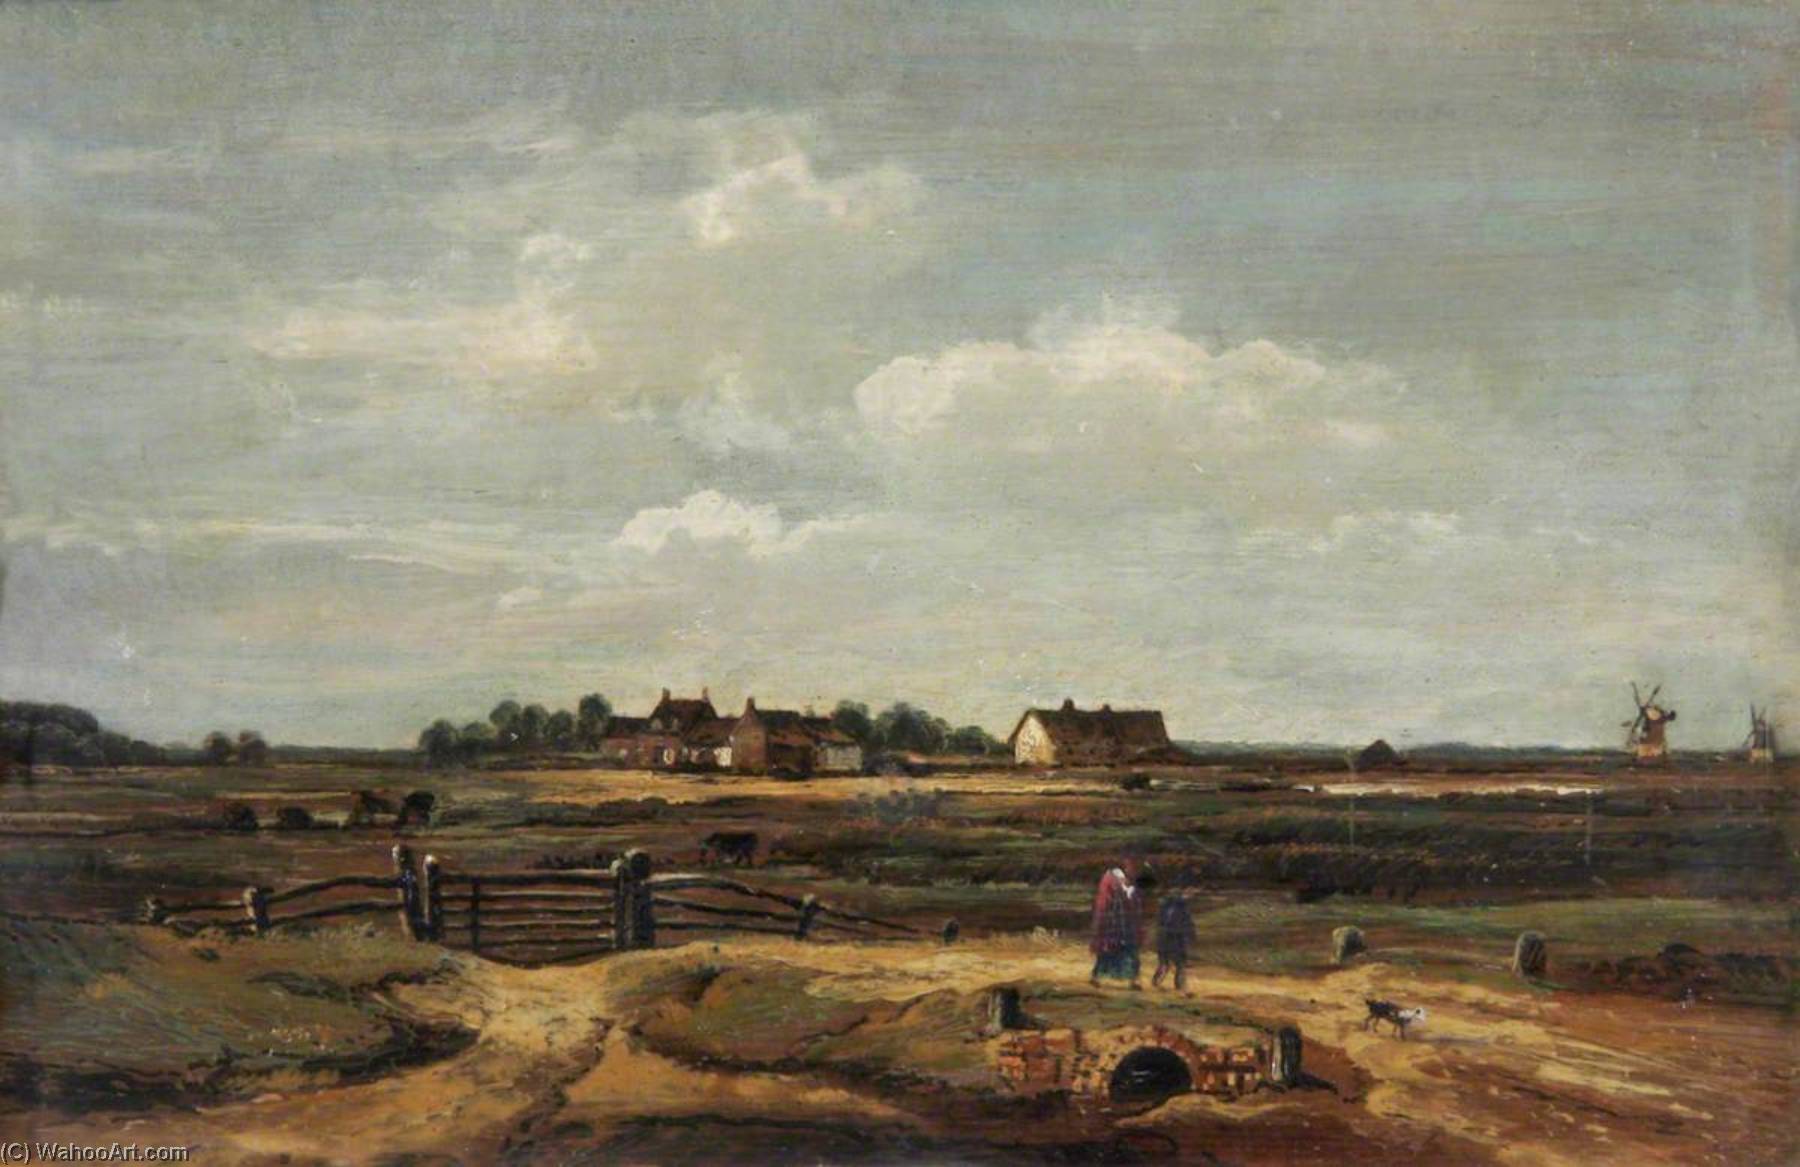 WikiOO.org - Encyclopedia of Fine Arts - Lukisan, Artwork Robert Ladbrooke - Landscape